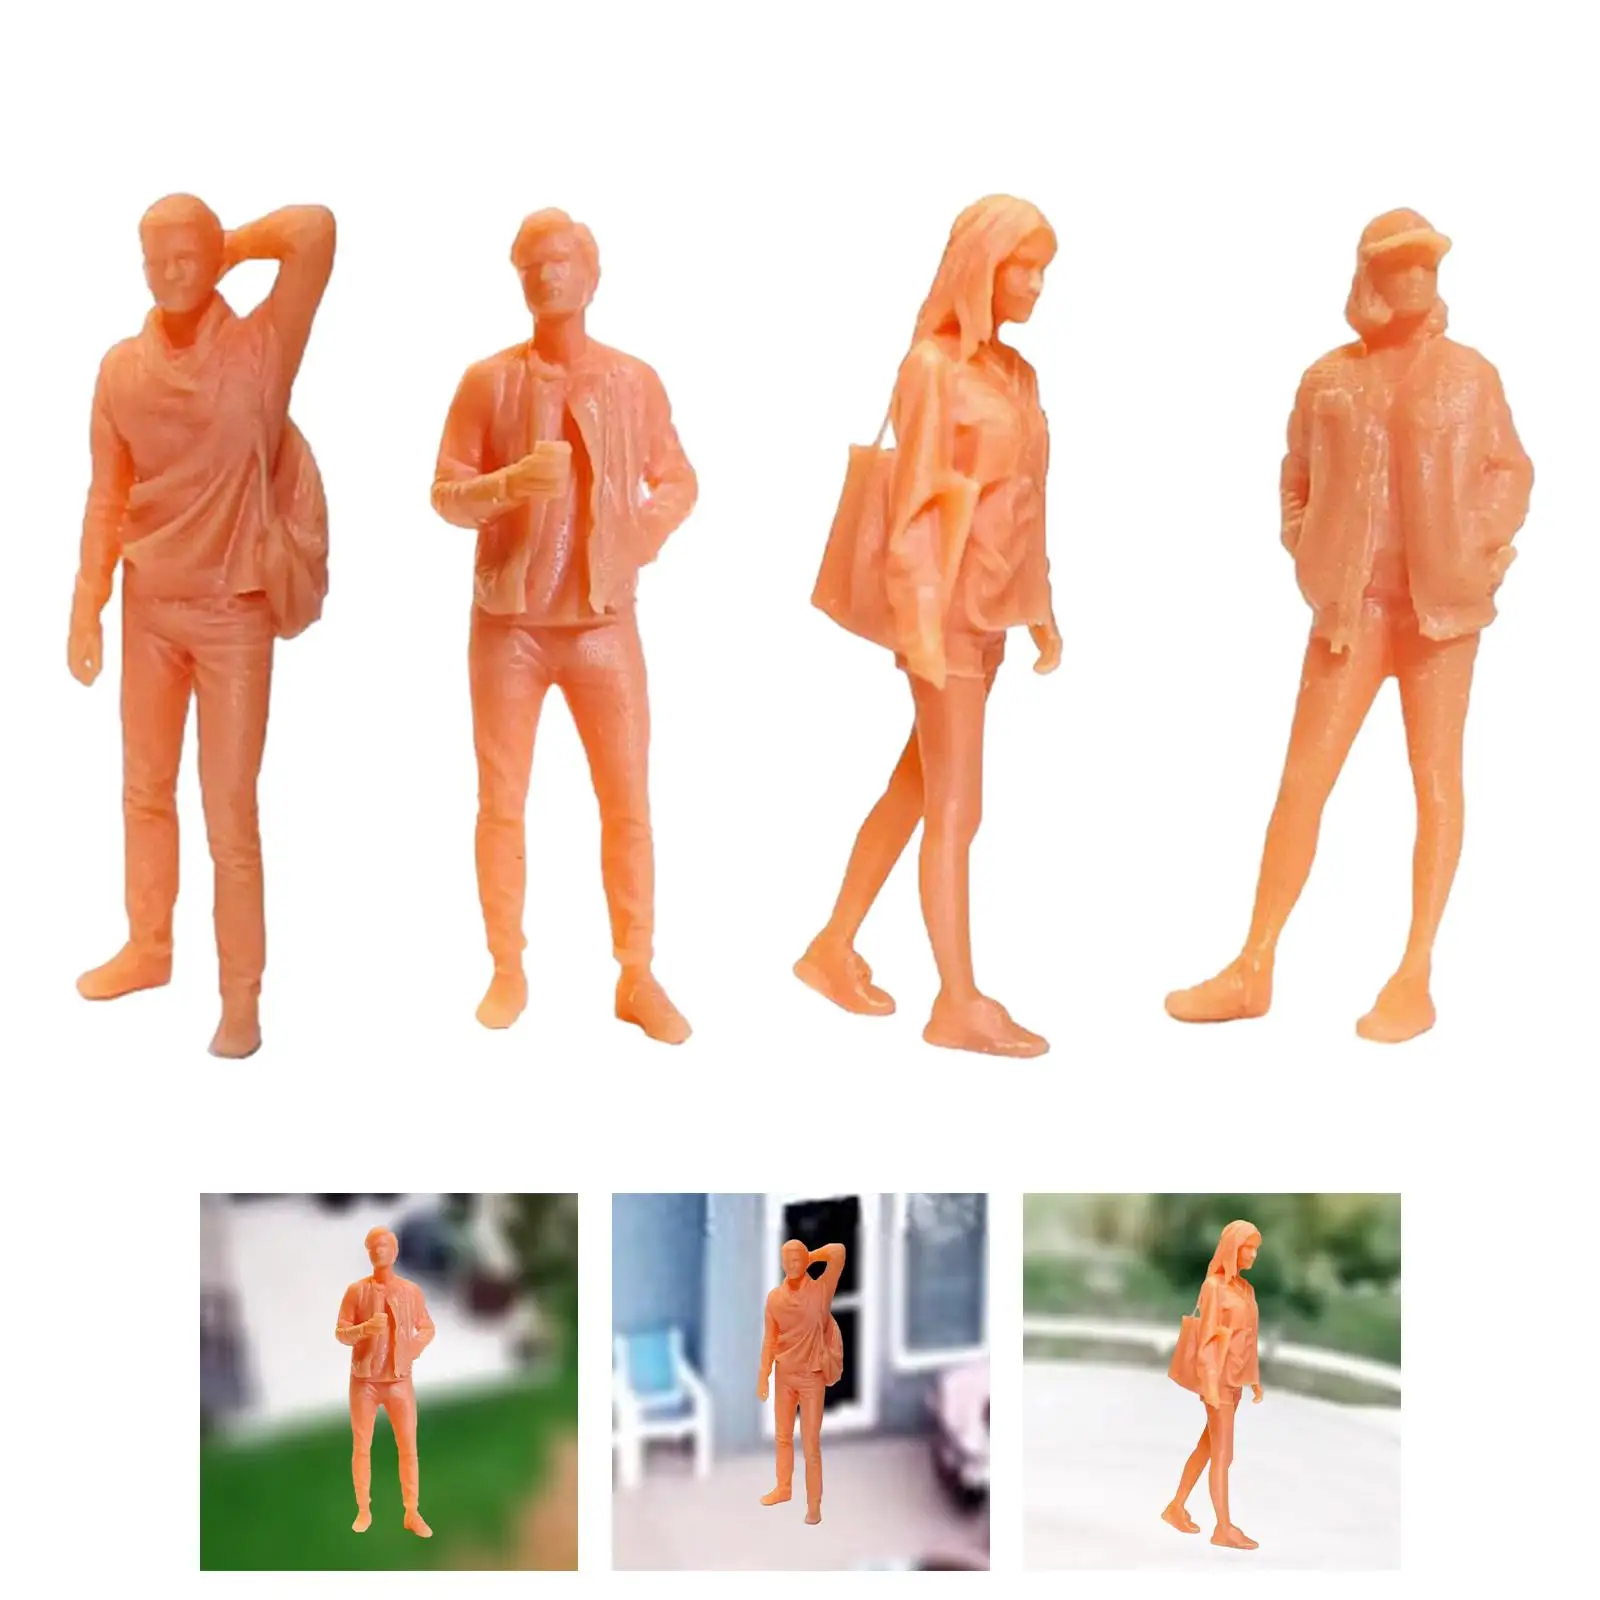 1/64 Scale Diorama Figure Diorama Action Figurines Desktop Ornament Scene Props Doll Figures Tiny Mini People Figures Decor